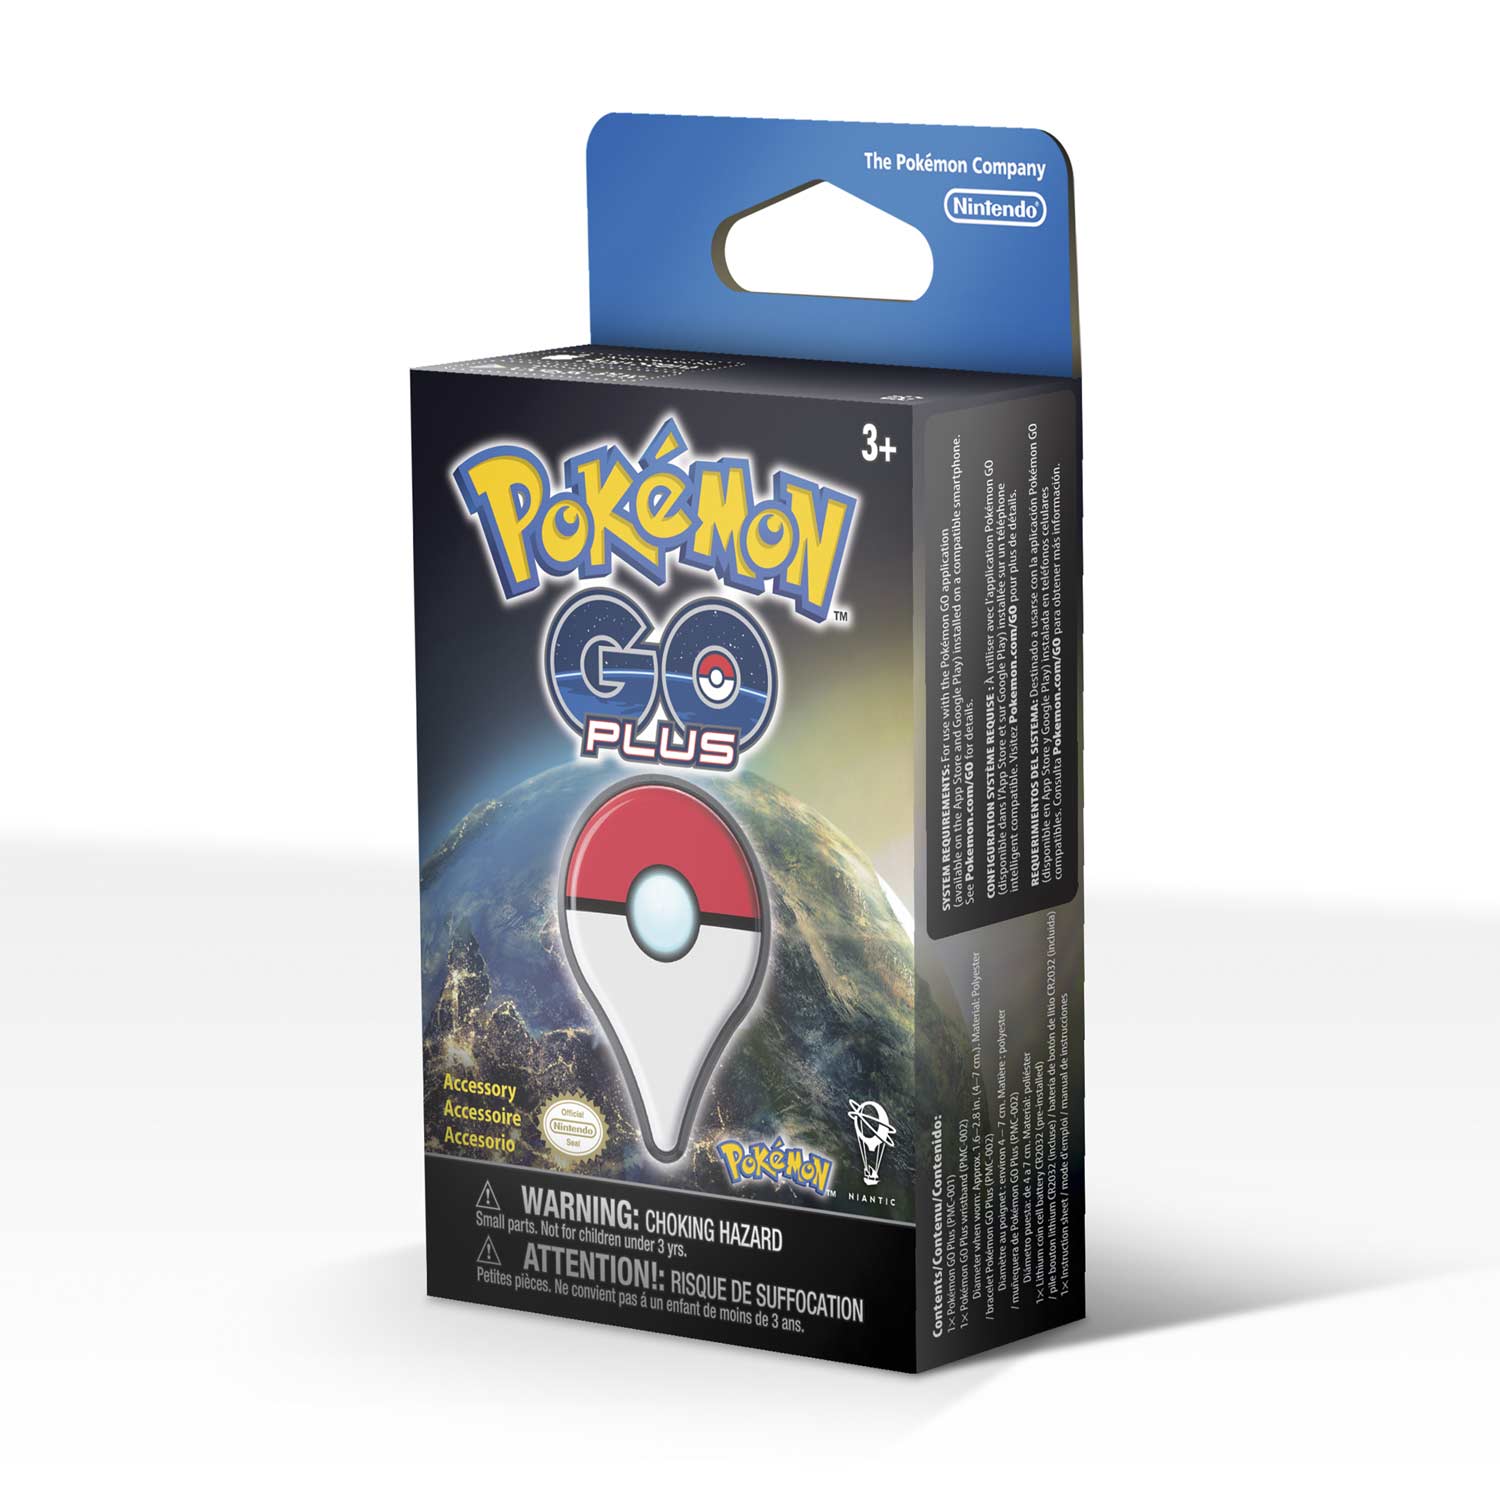 Pokémon GO Plus | Wristband Accessory | Catch Pokémon in the game